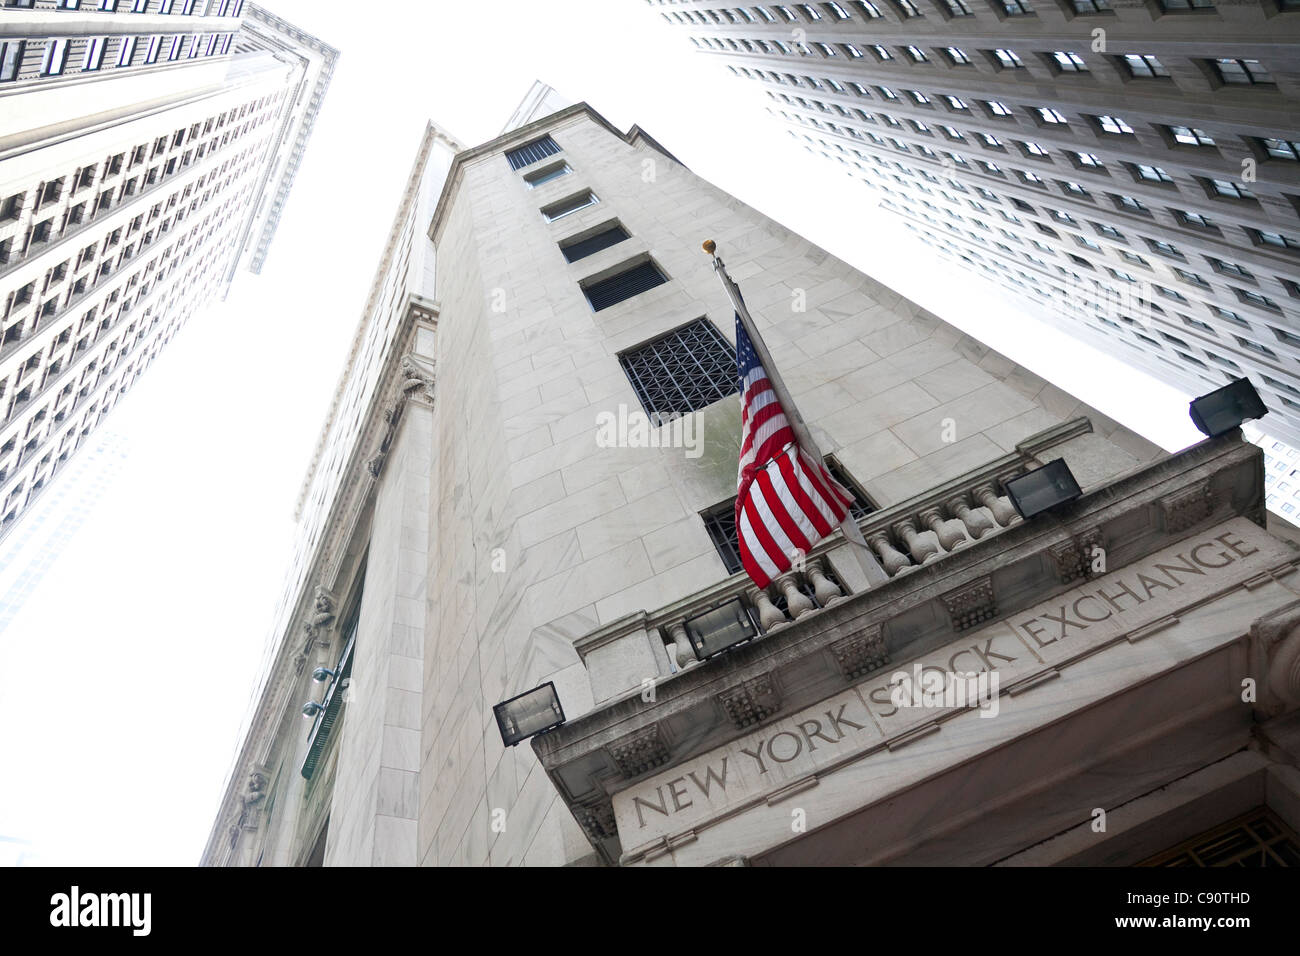 Bourse de New York l'architecte George Browne Post centre du monde financier Manhattan New York United States of Amer Banque D'Images